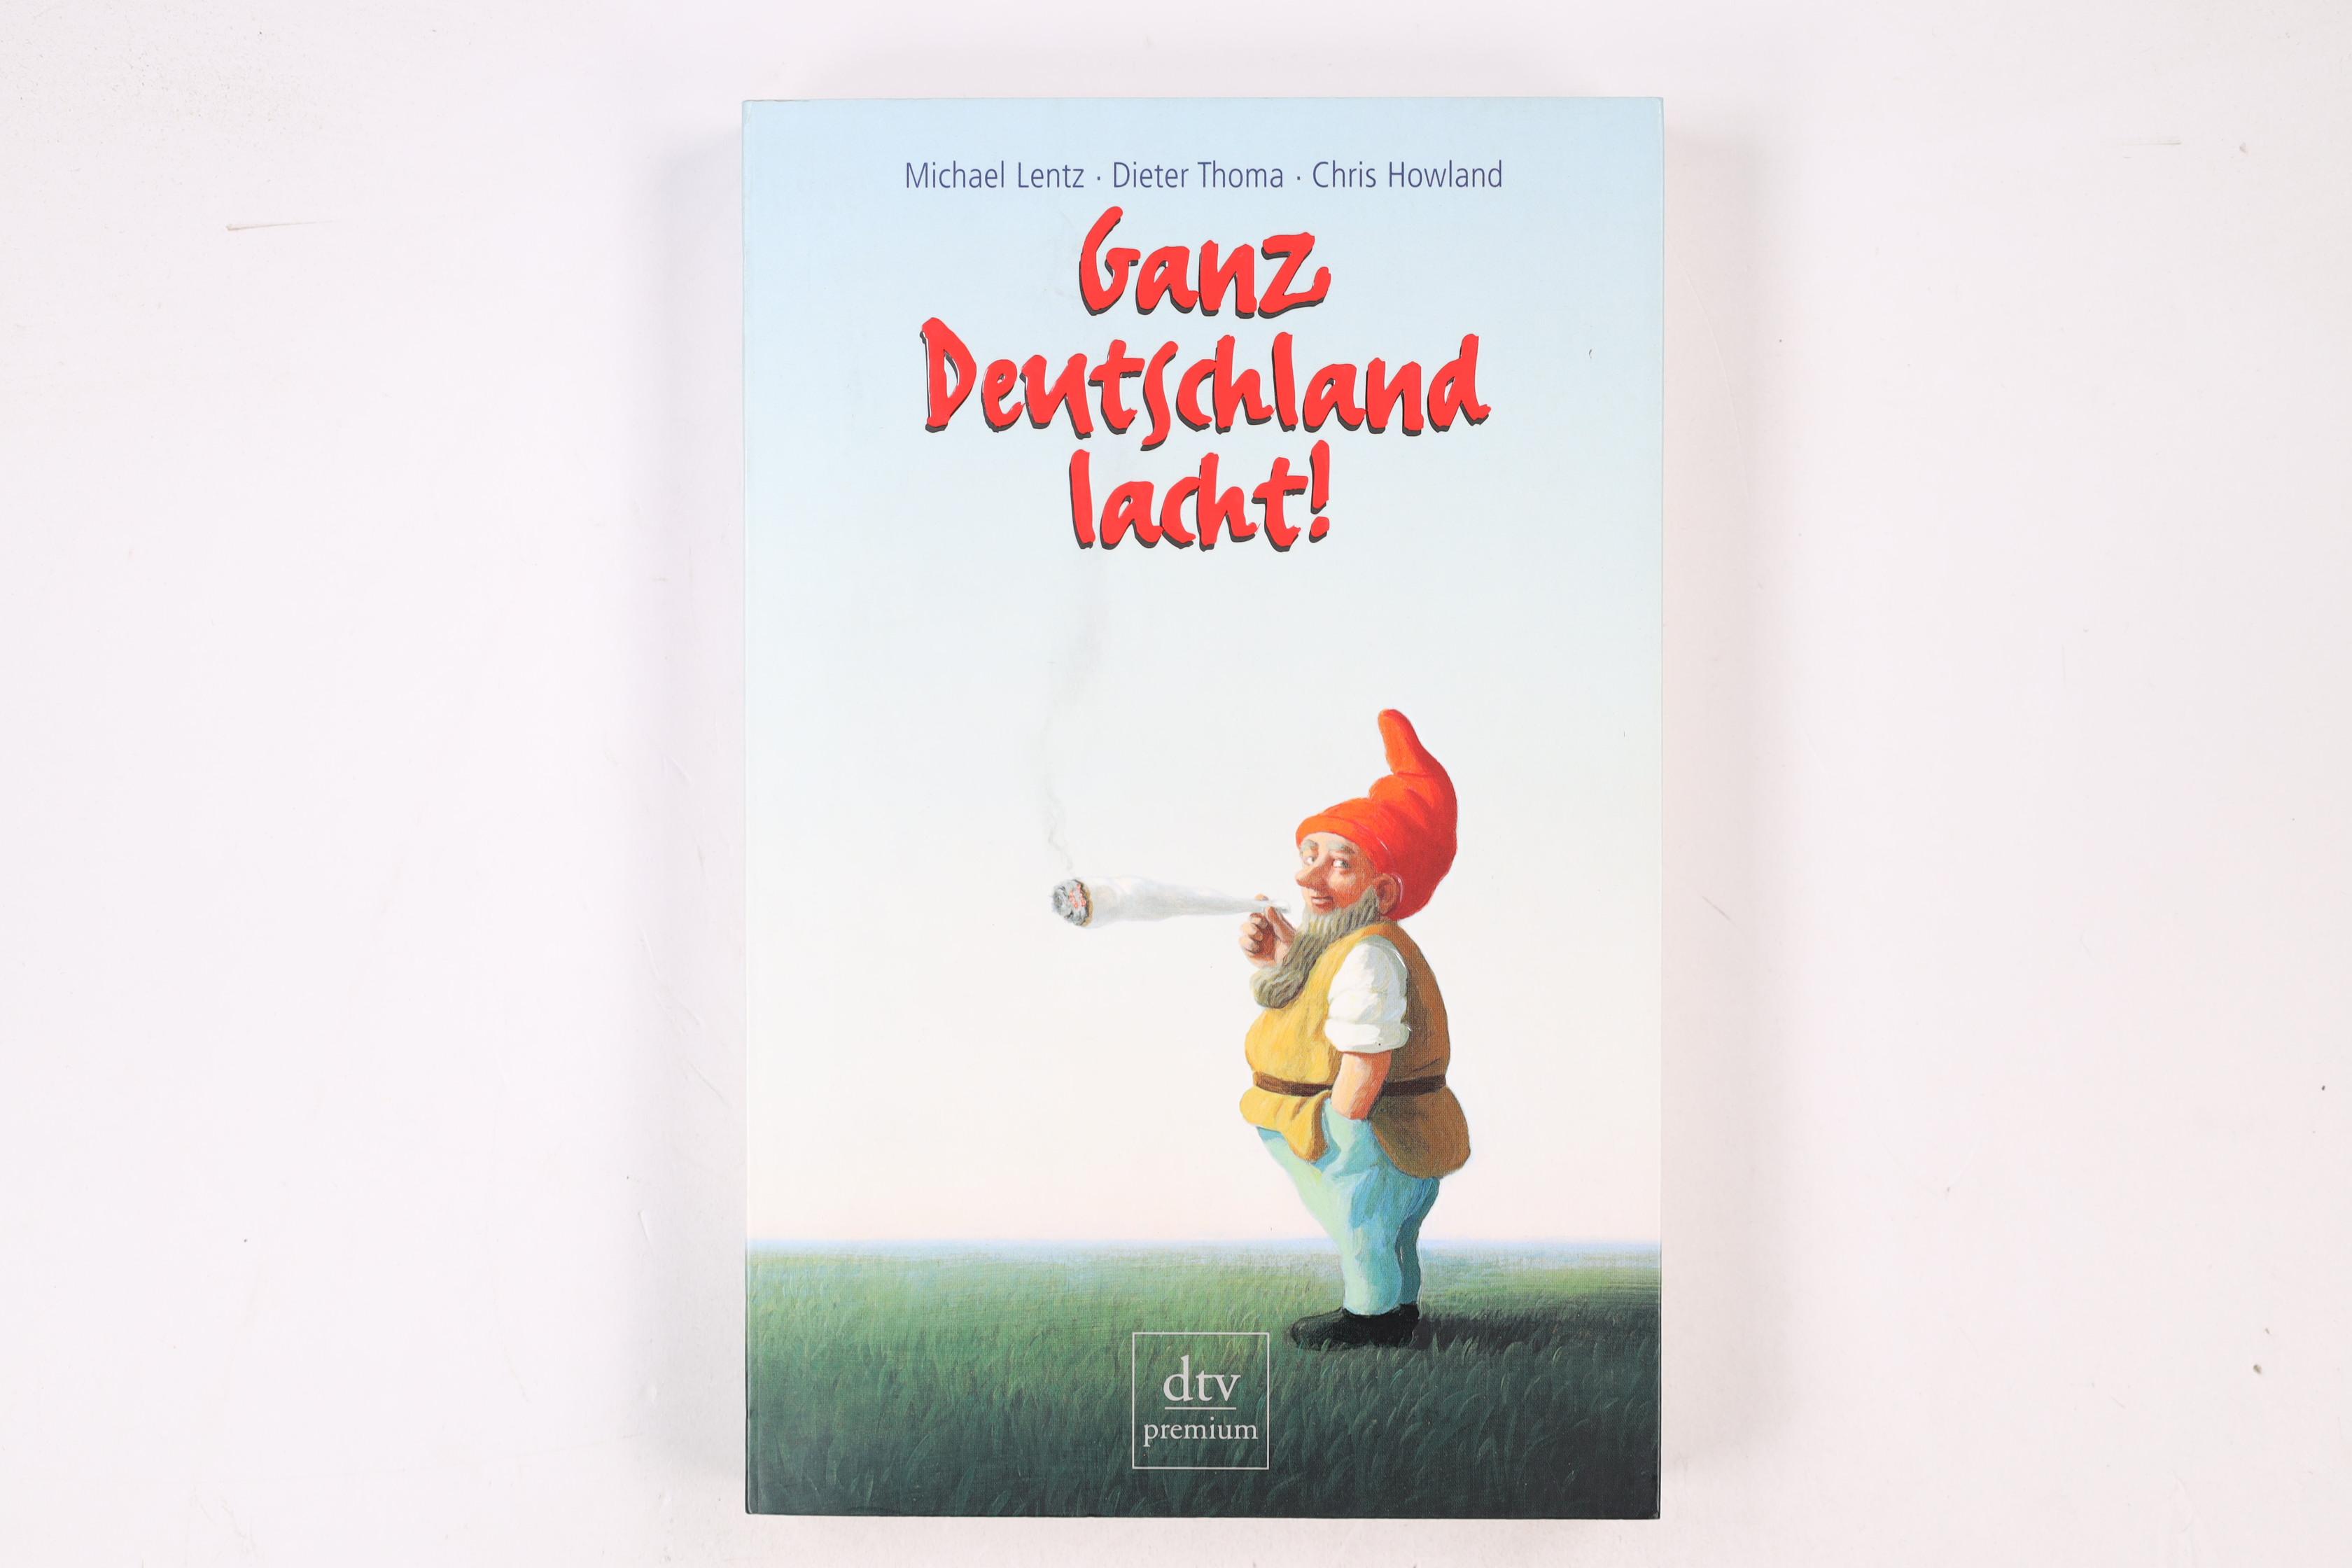 GANZ DEUTSCHLAND LACHT!. 50 deutsche Jahre im Spiegel ihrer Witze - Lentz, Michael; Thoma, Dieter; Howland, Chris; ; [Hrsg.]: Jamin, Peter H.